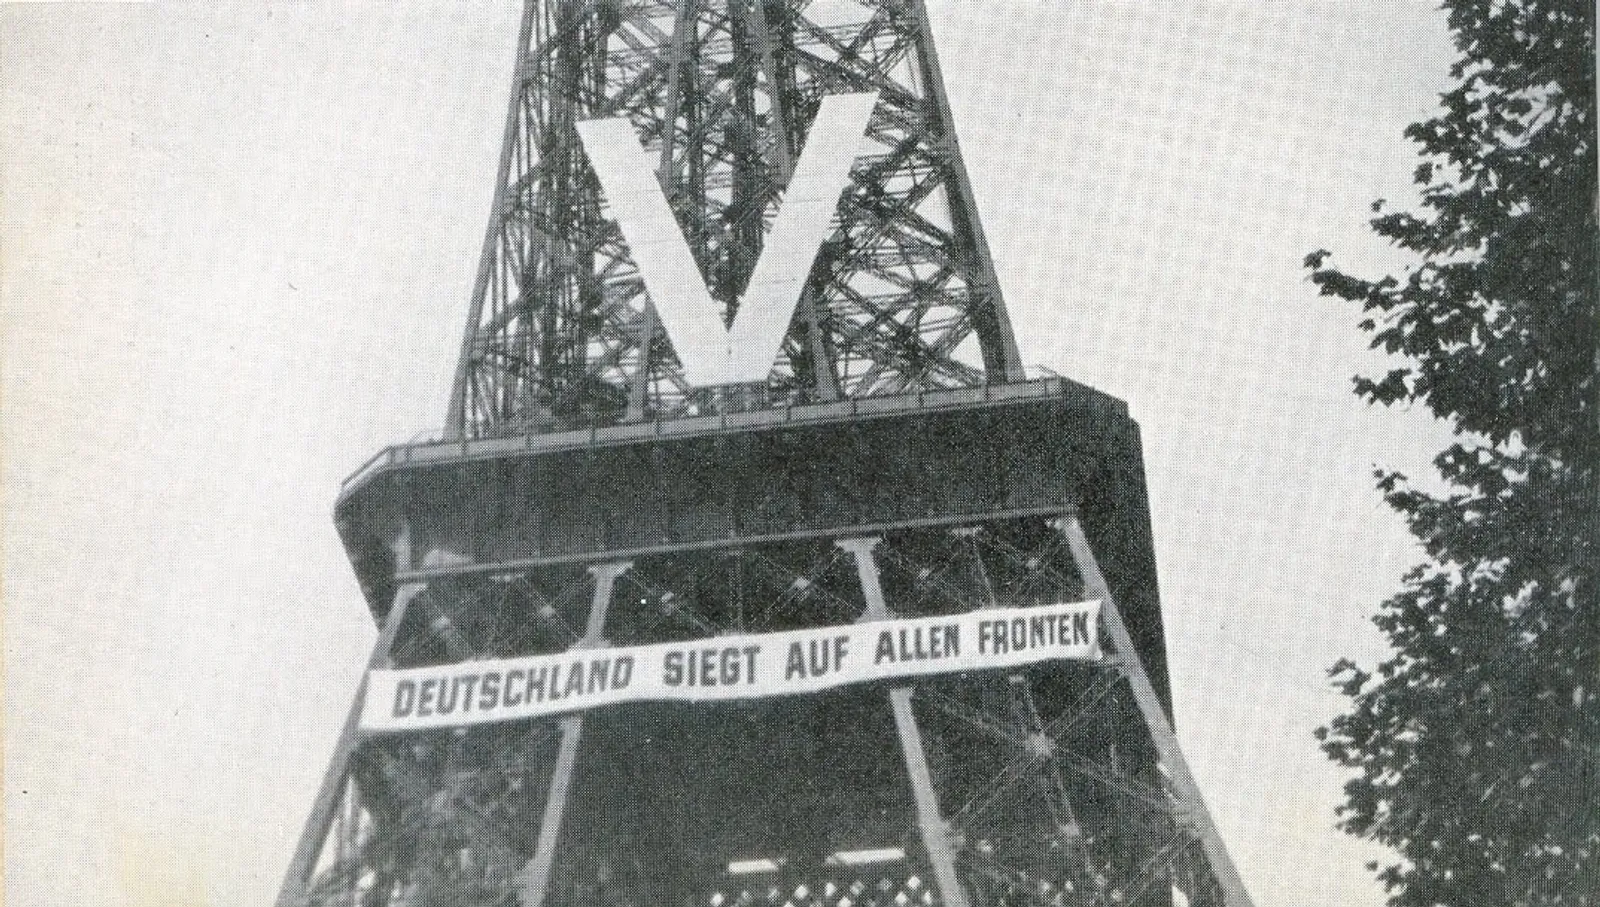 Punya Bunker Rahasia, Ini 17 Fakta Menarik Menara Eiffel